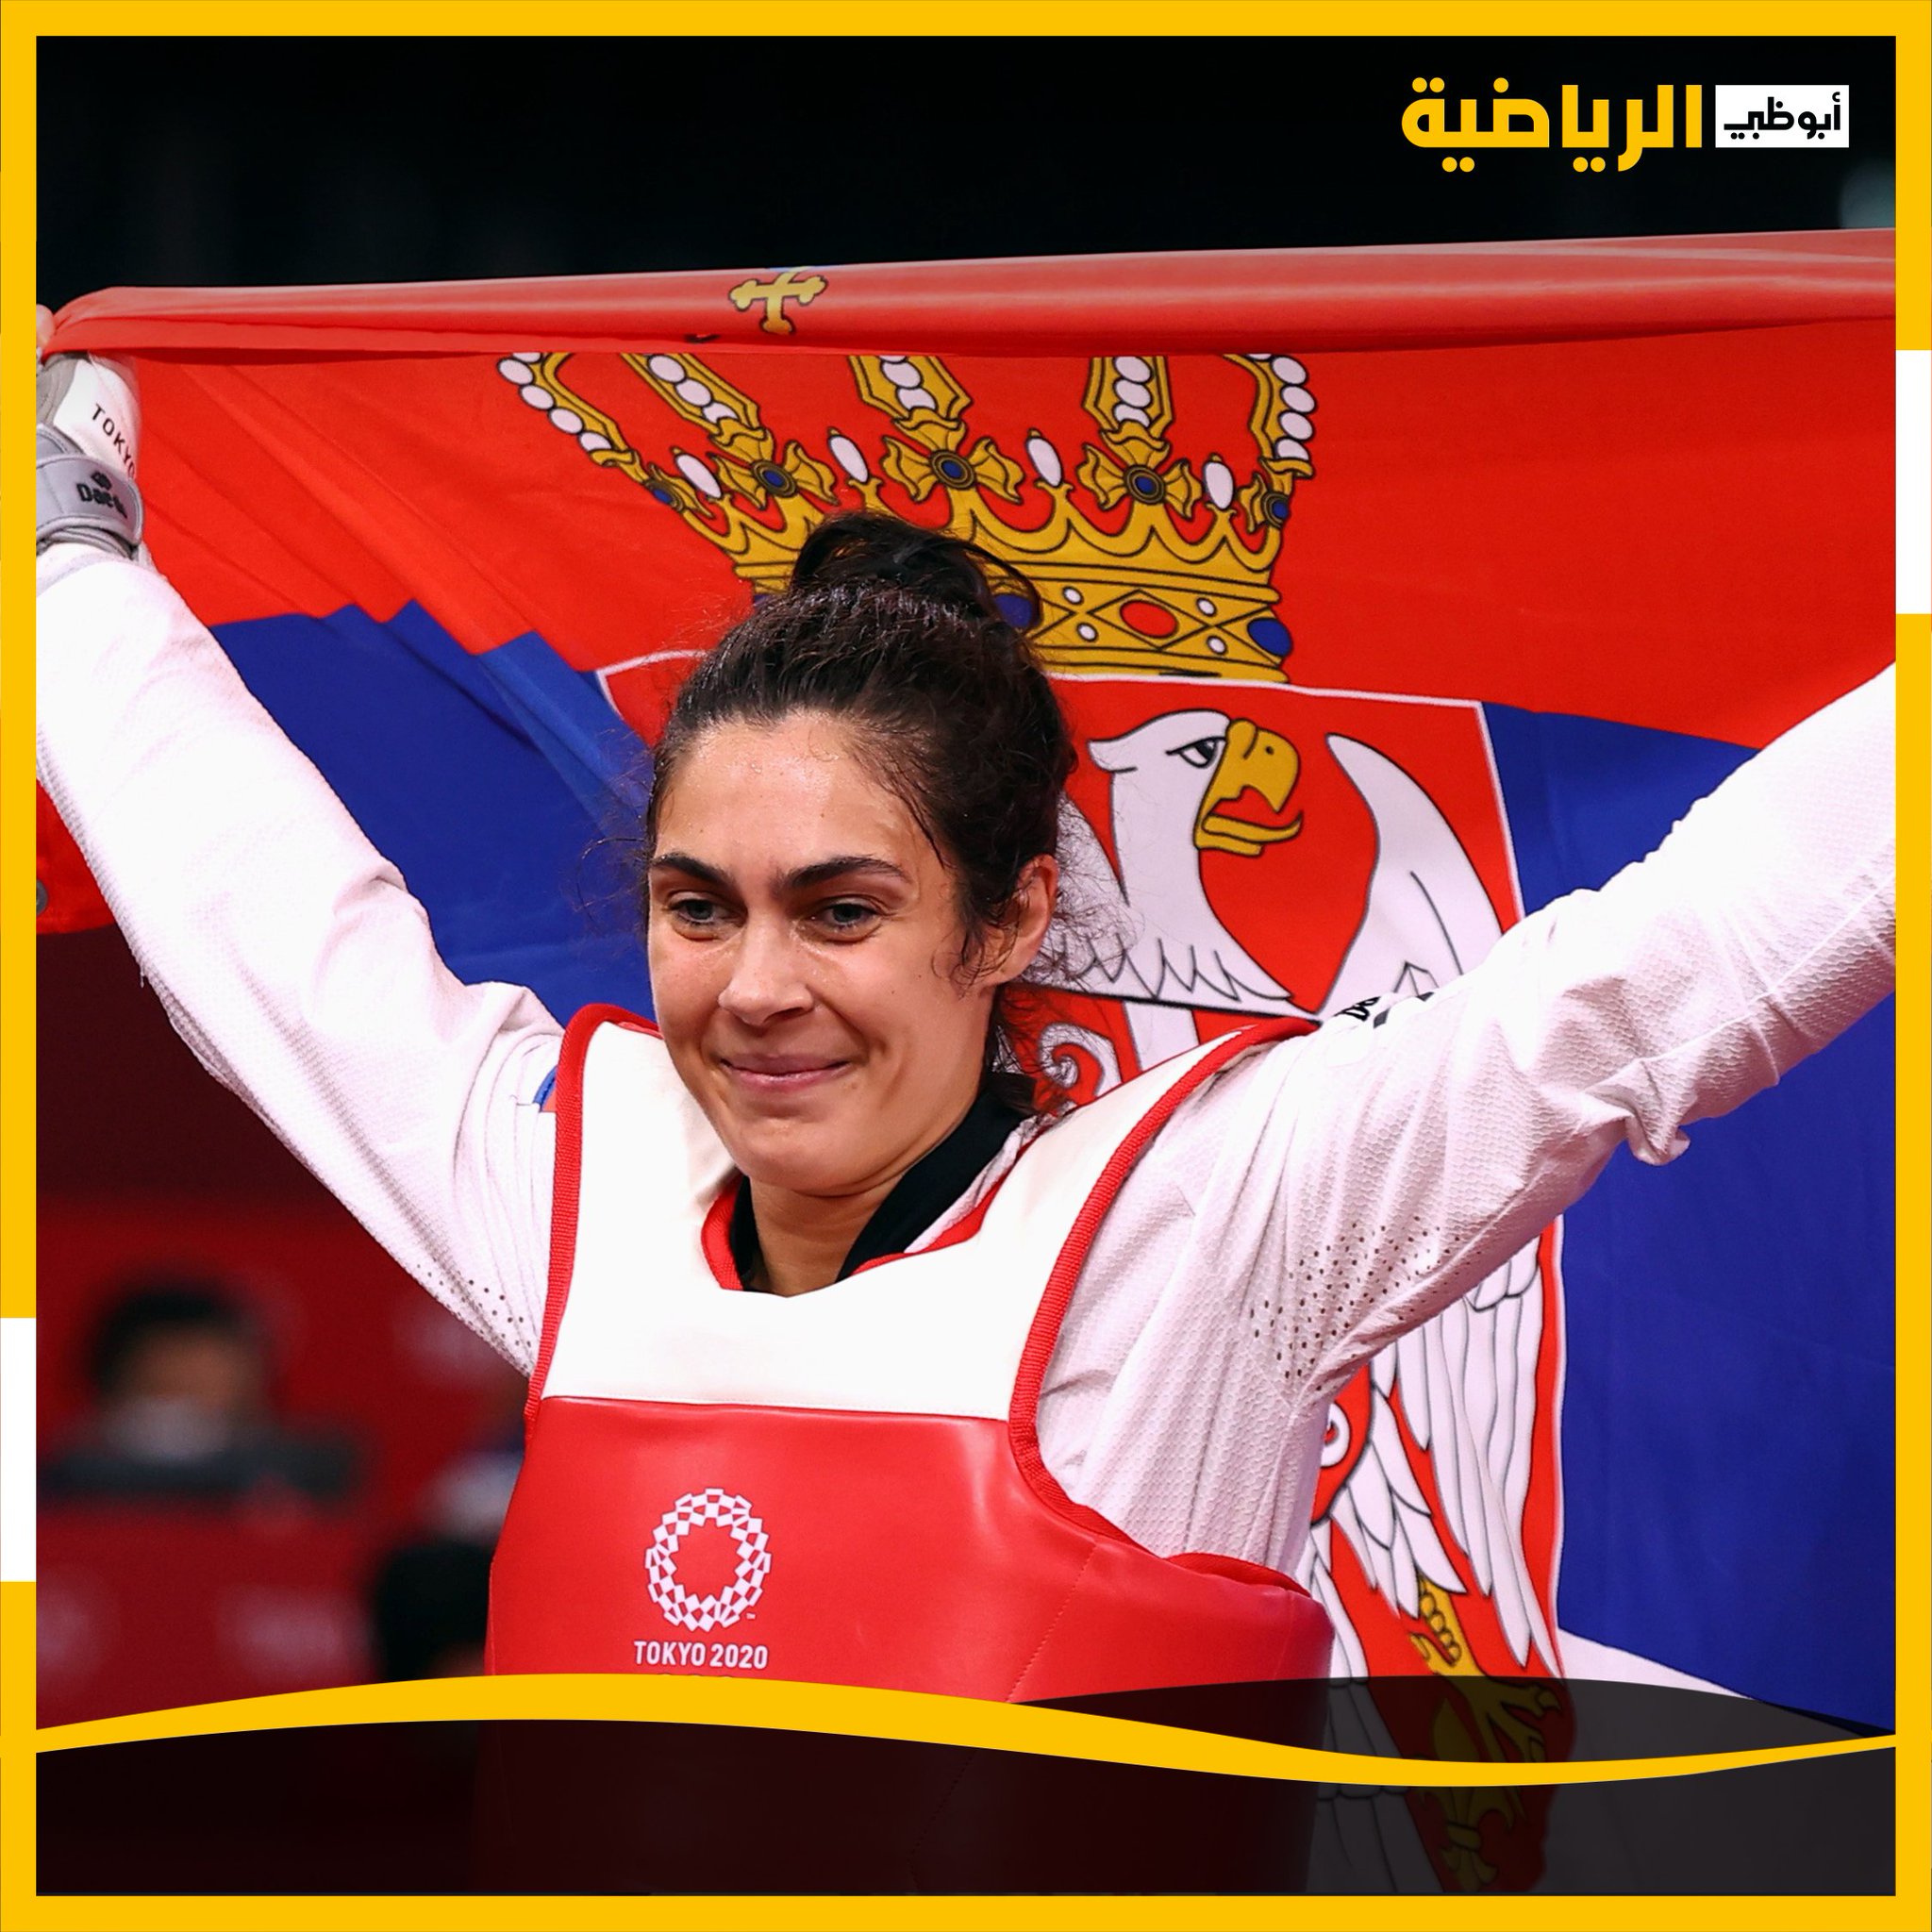 قناة أبو ظبي - الرياضية | #طوكيو2020.. الصربية ميليكا مانديتش تفوز ...